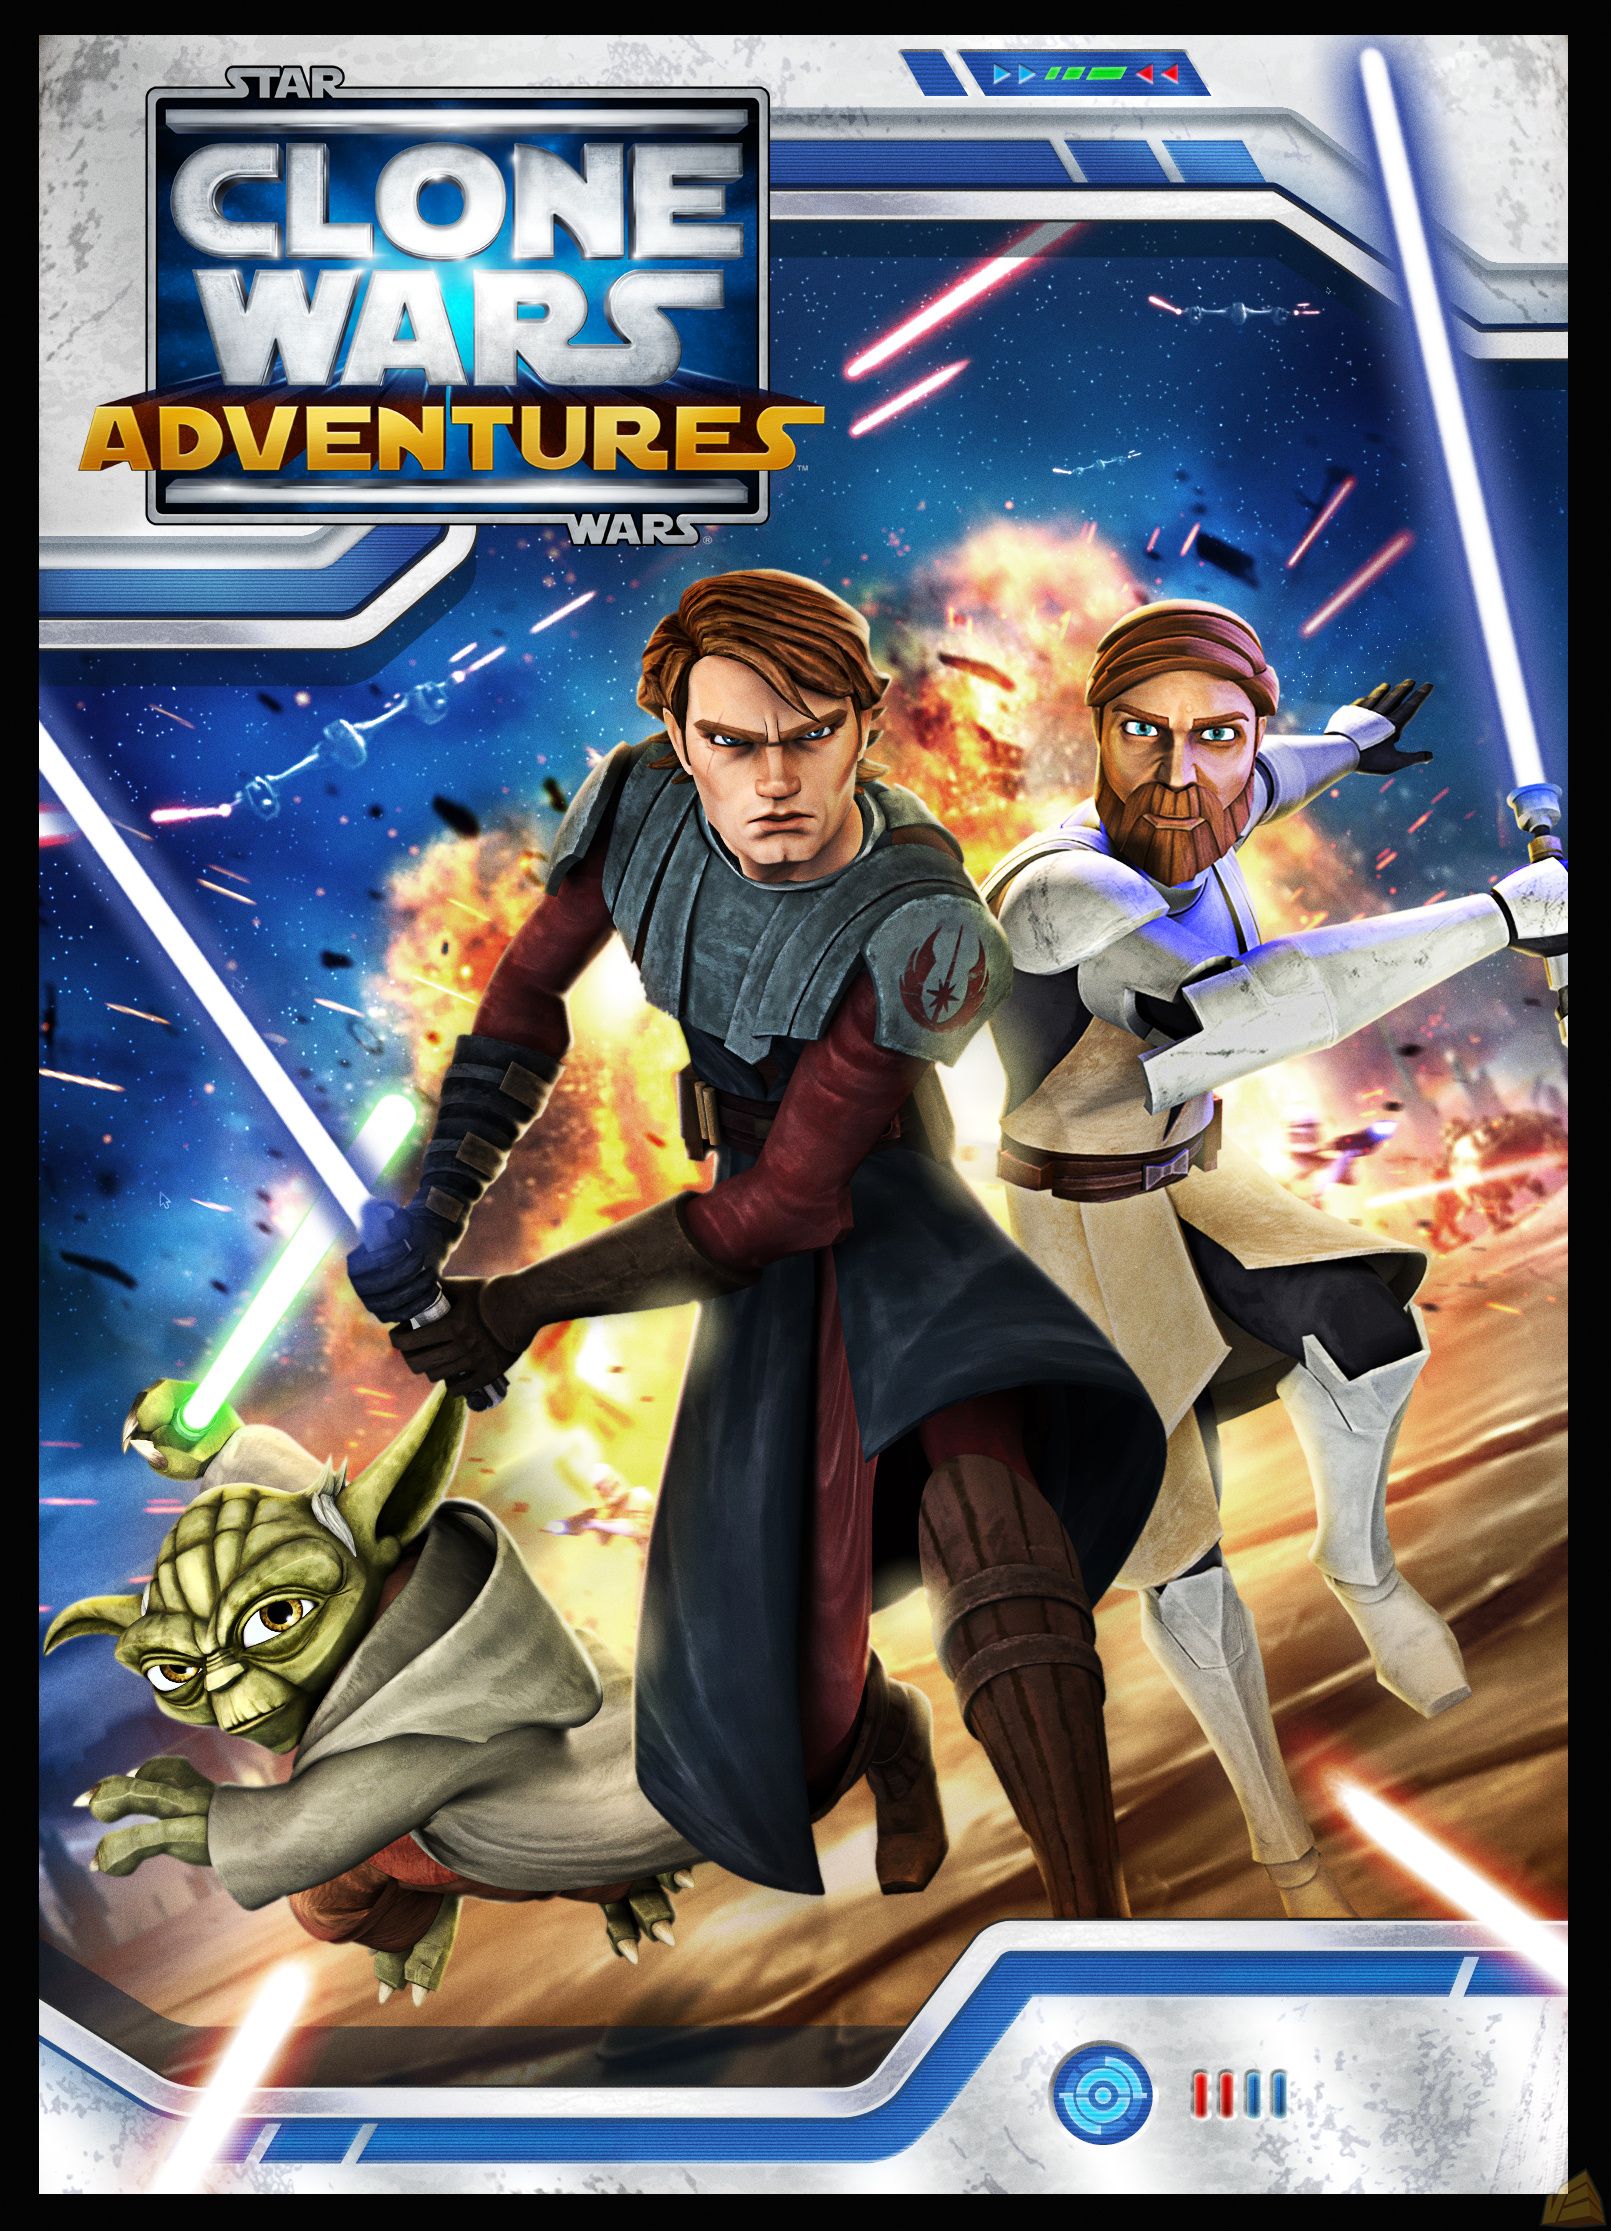 Star Wars: Clone Wars Adventures (videojuego) | Star Wars Wiki | FANDOM